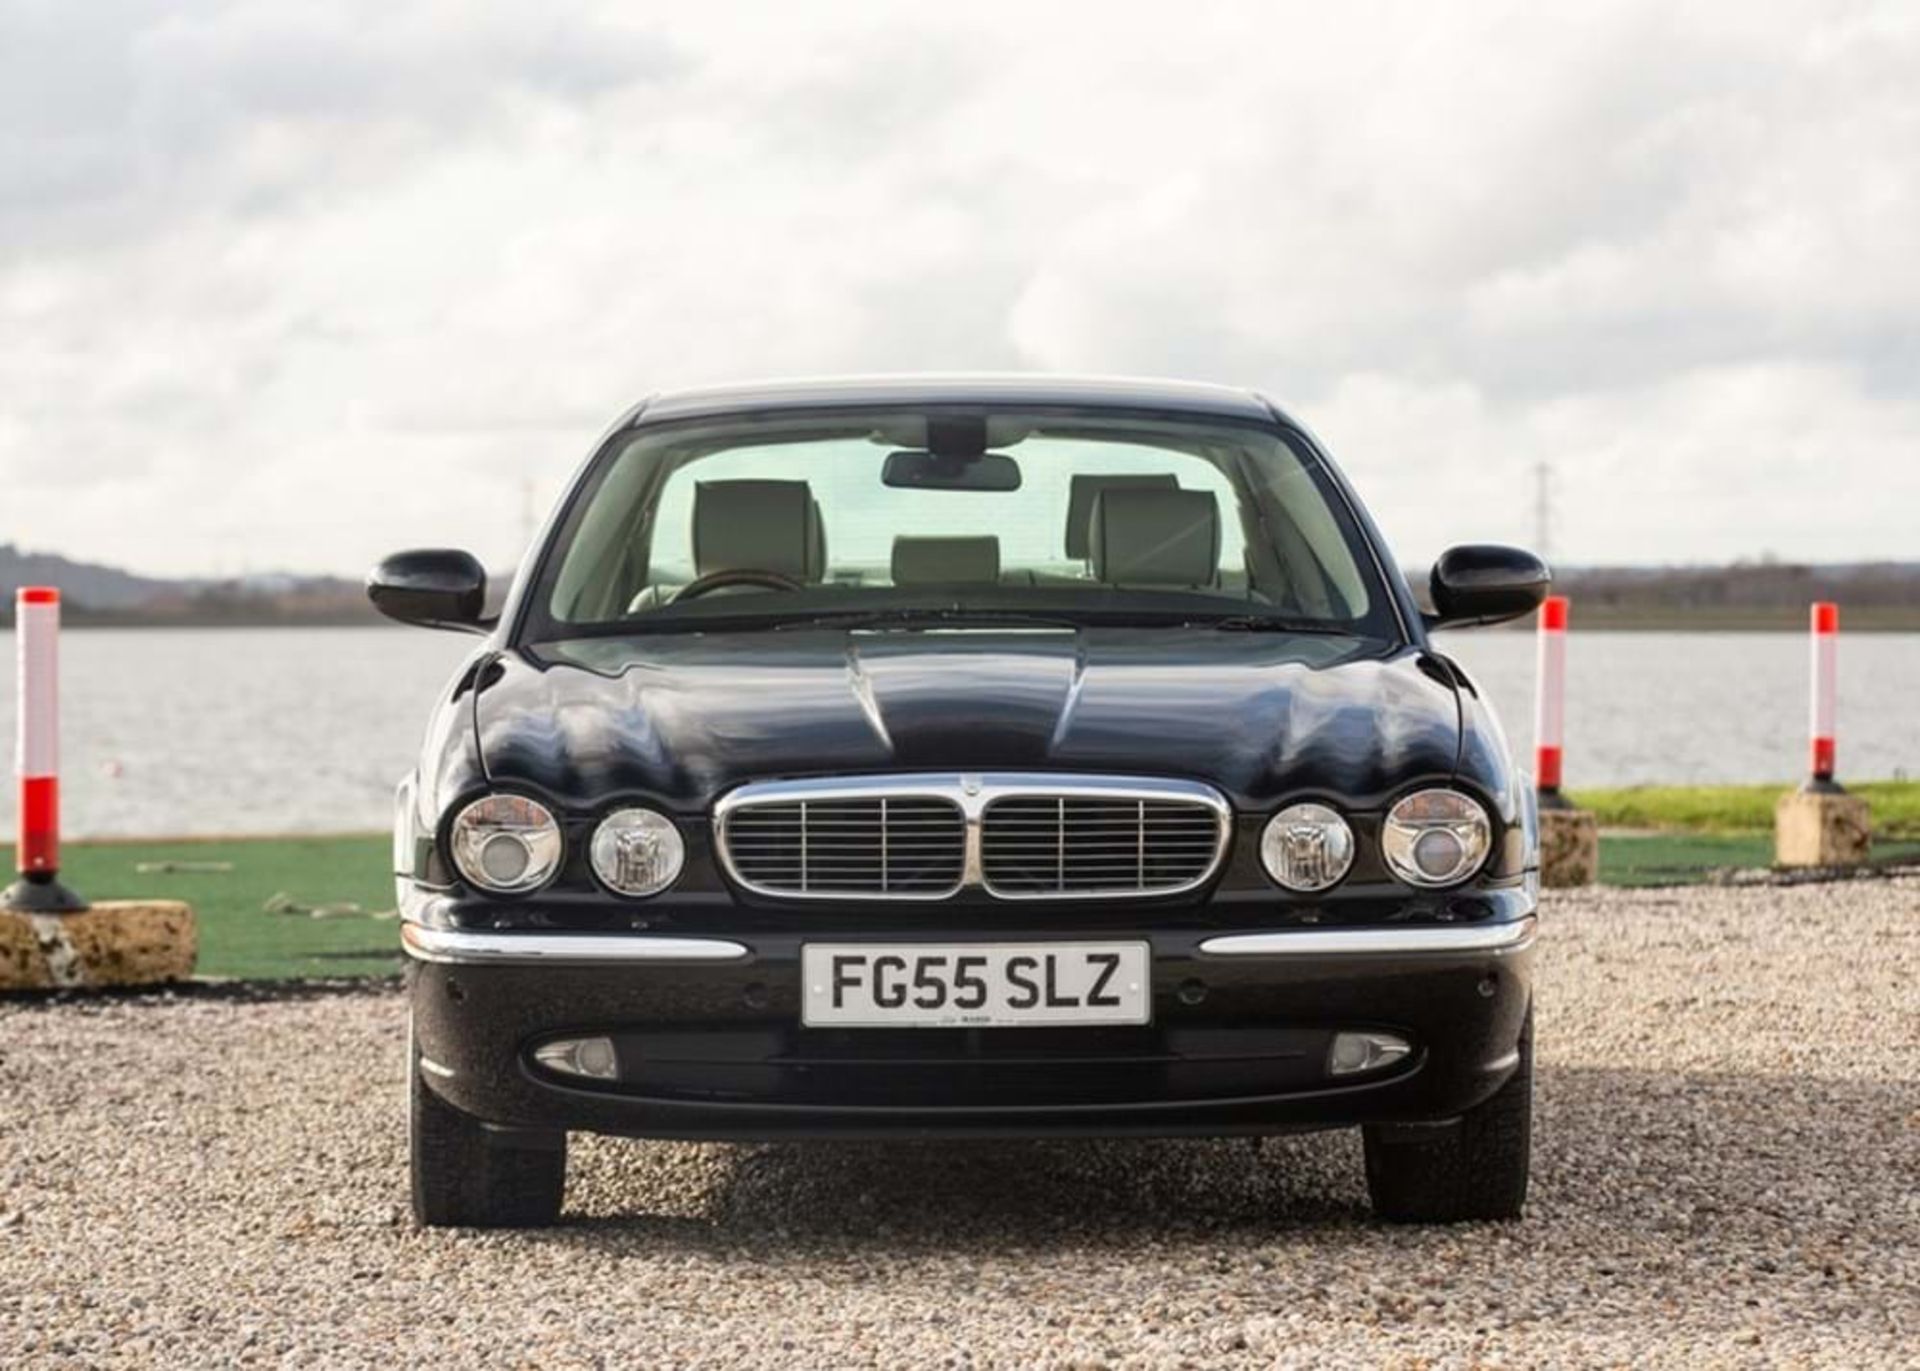 2005 Jaguar Sovereign V8 LWB (4.2 Litre) - Image 9 of 10